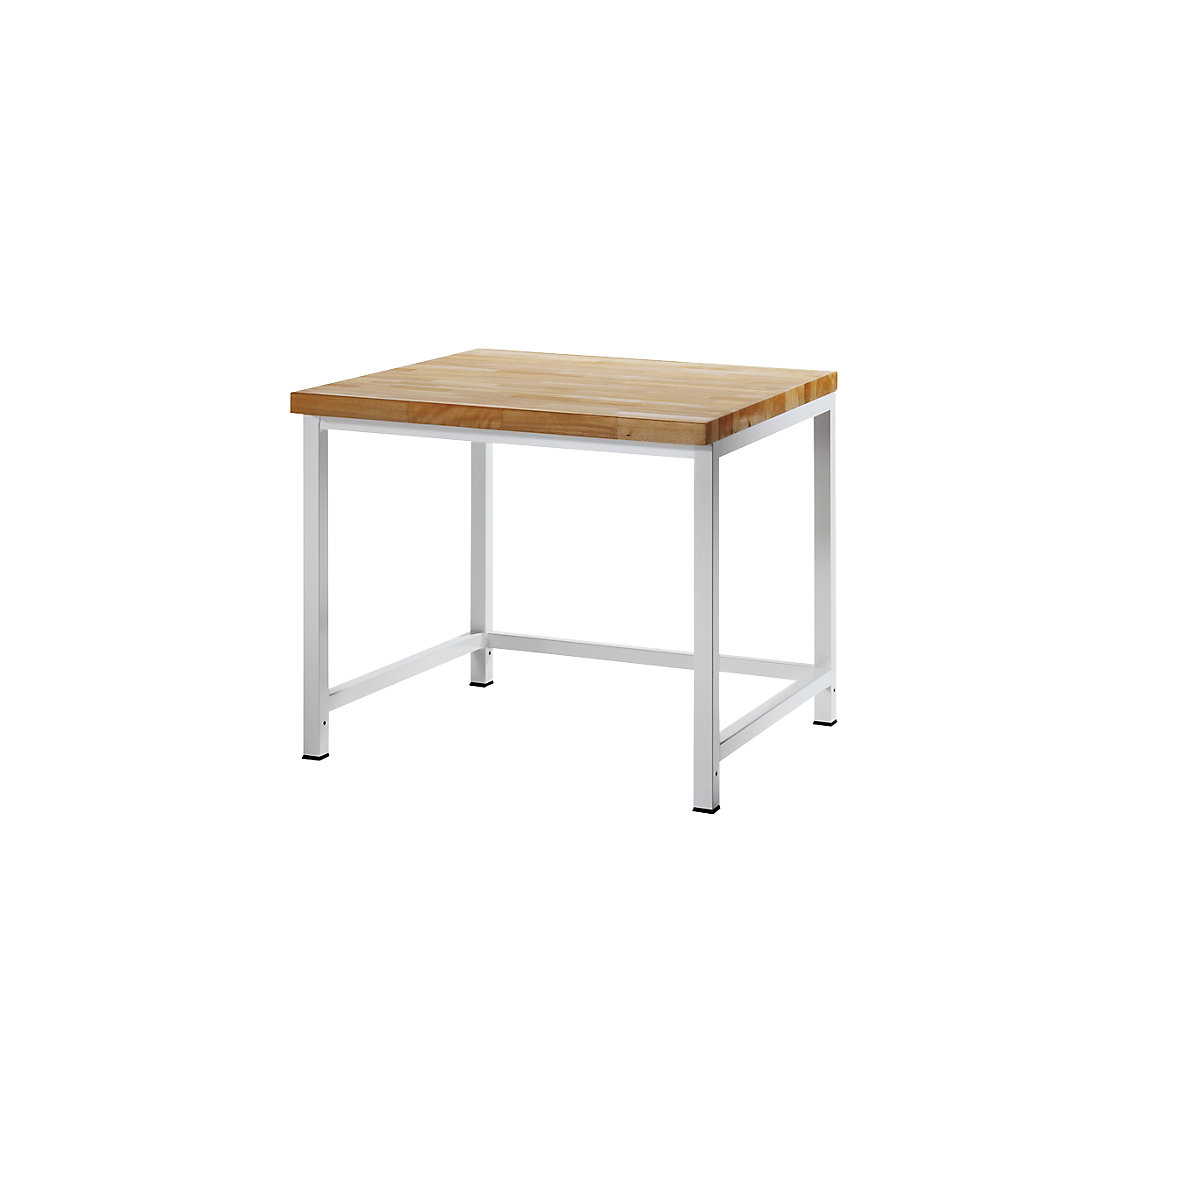 Dílenský stůl s rámovou konstrukcí – RAU, 1 příčná výztuha, hloubka 900 mm, šířka 1000 mm-3